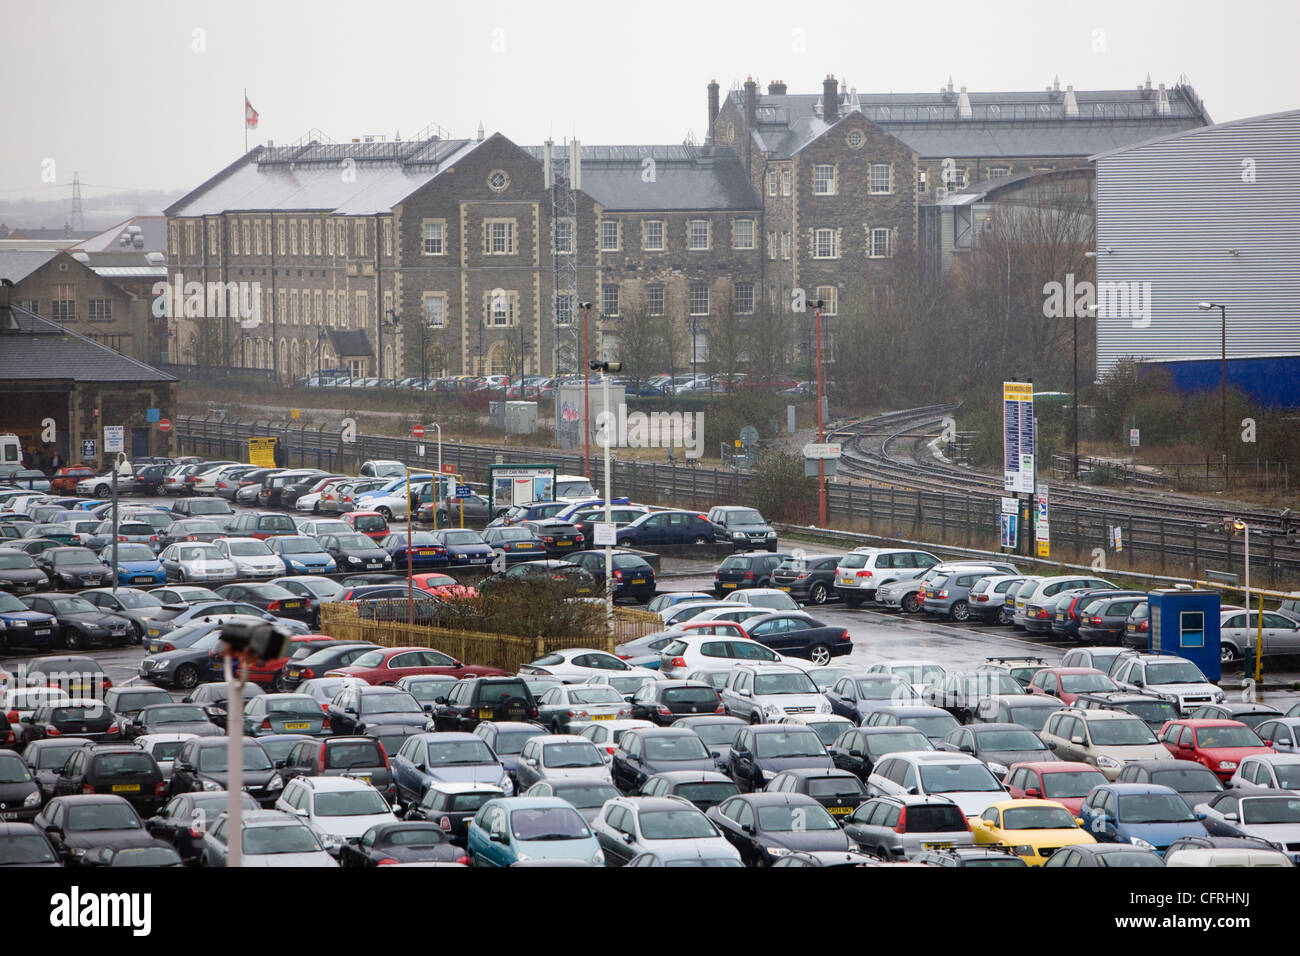 Amplio aparcamiento lleno de coches aparcados delante de la sede de English Heritage en Swindon, Wiltshire Foto de stock